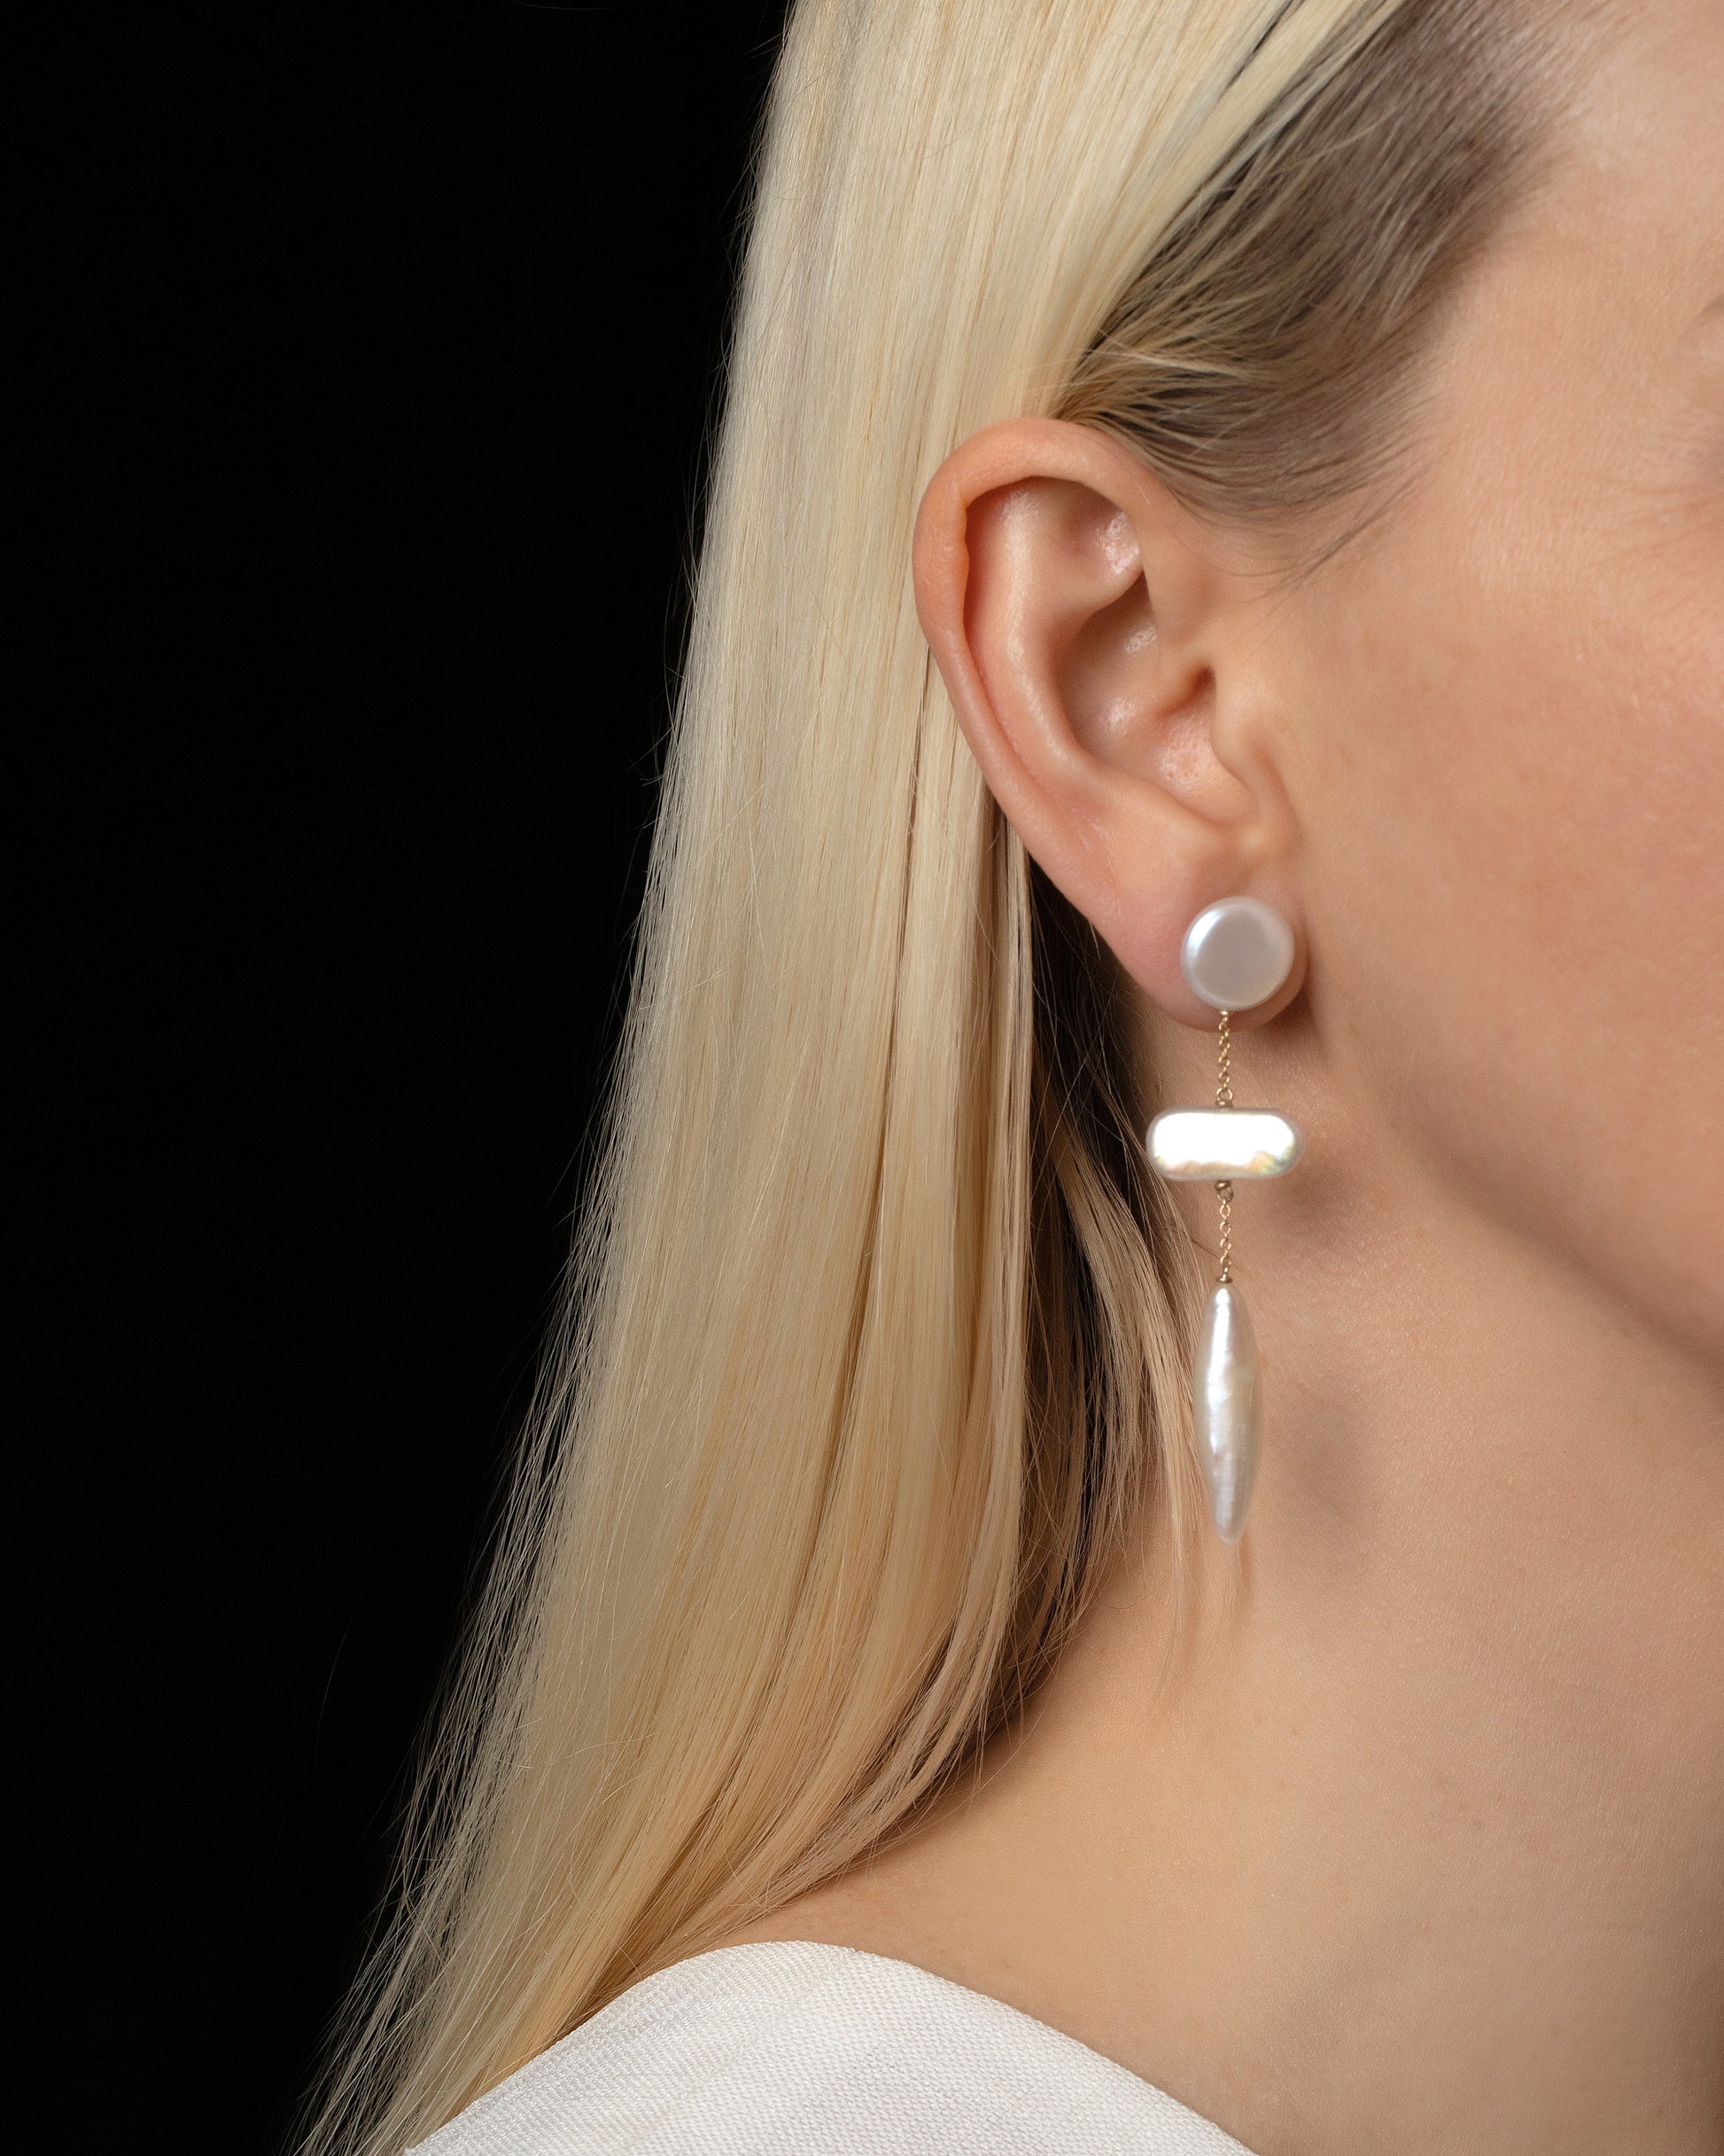 Heron Pearl Earrings on model.